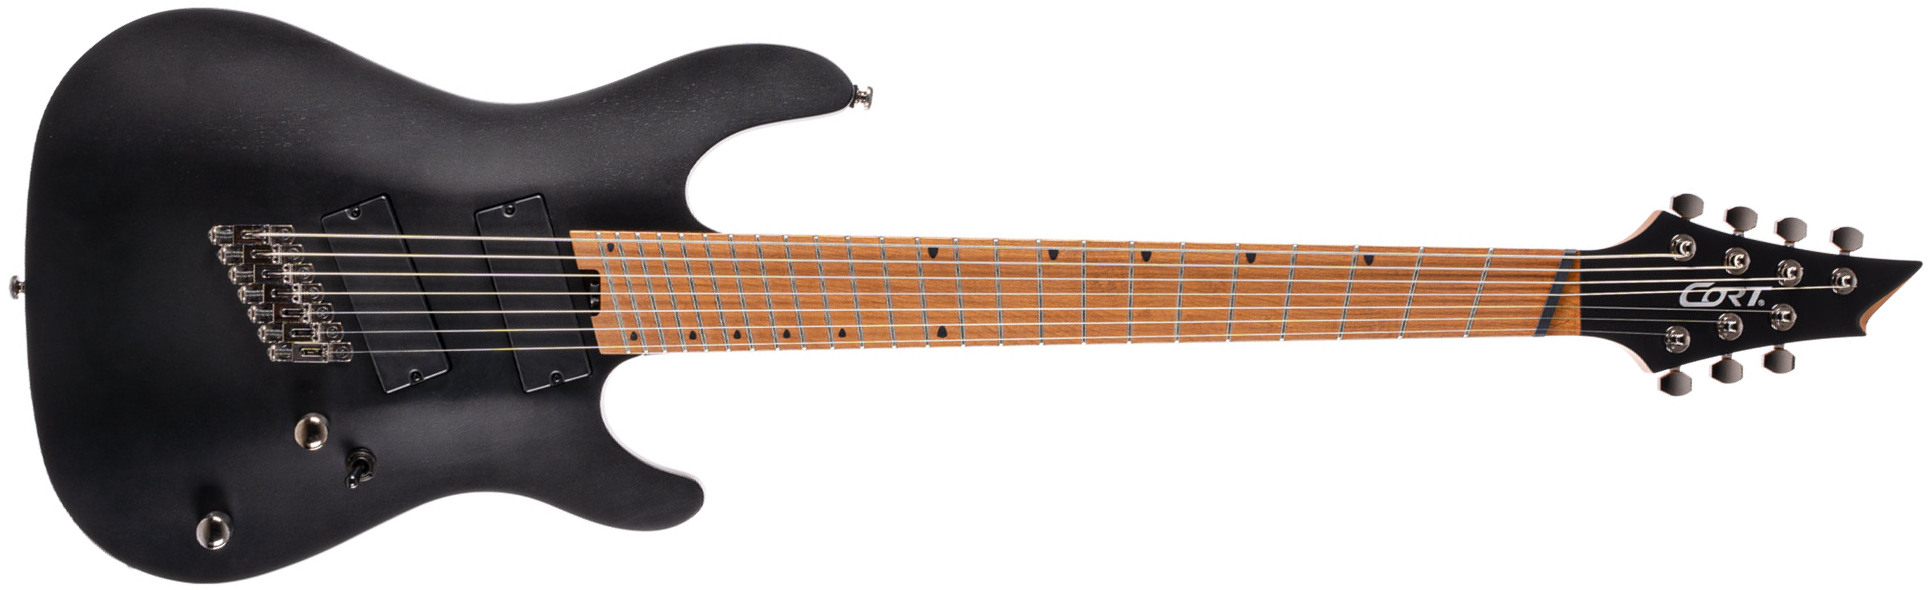 Cort Kx307 Multiscale 7c Ht Mn - Open Pore Black - Multi-Scale Guitar - Main picture